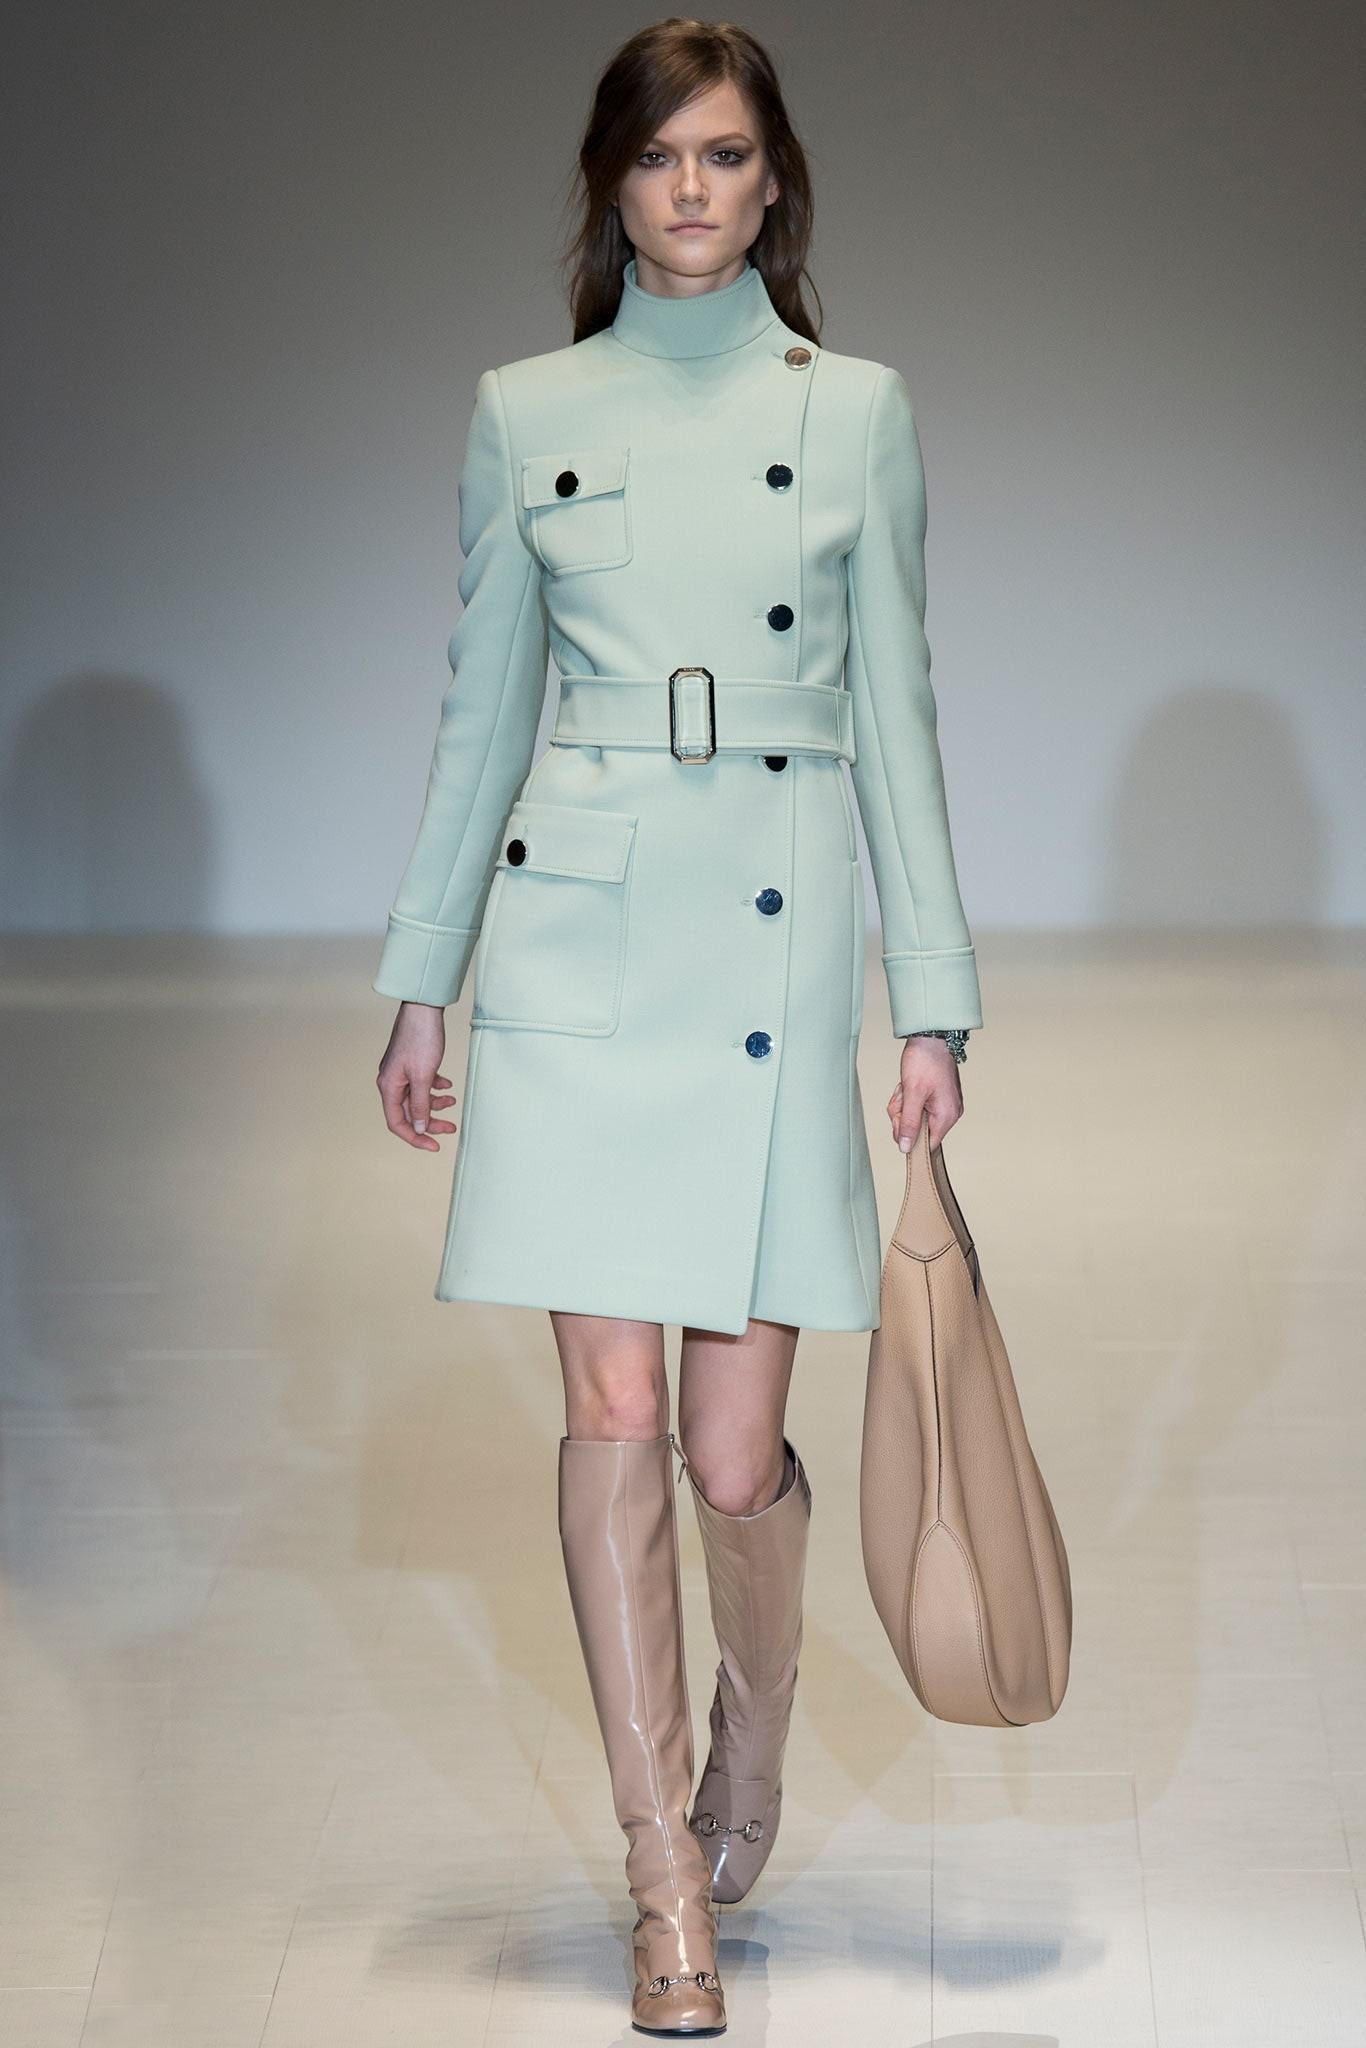 Nouveauté Gucci extra large sac Jackie O Gaga en cuir rose 3595 $ automne 2014 Pour femmes en vente